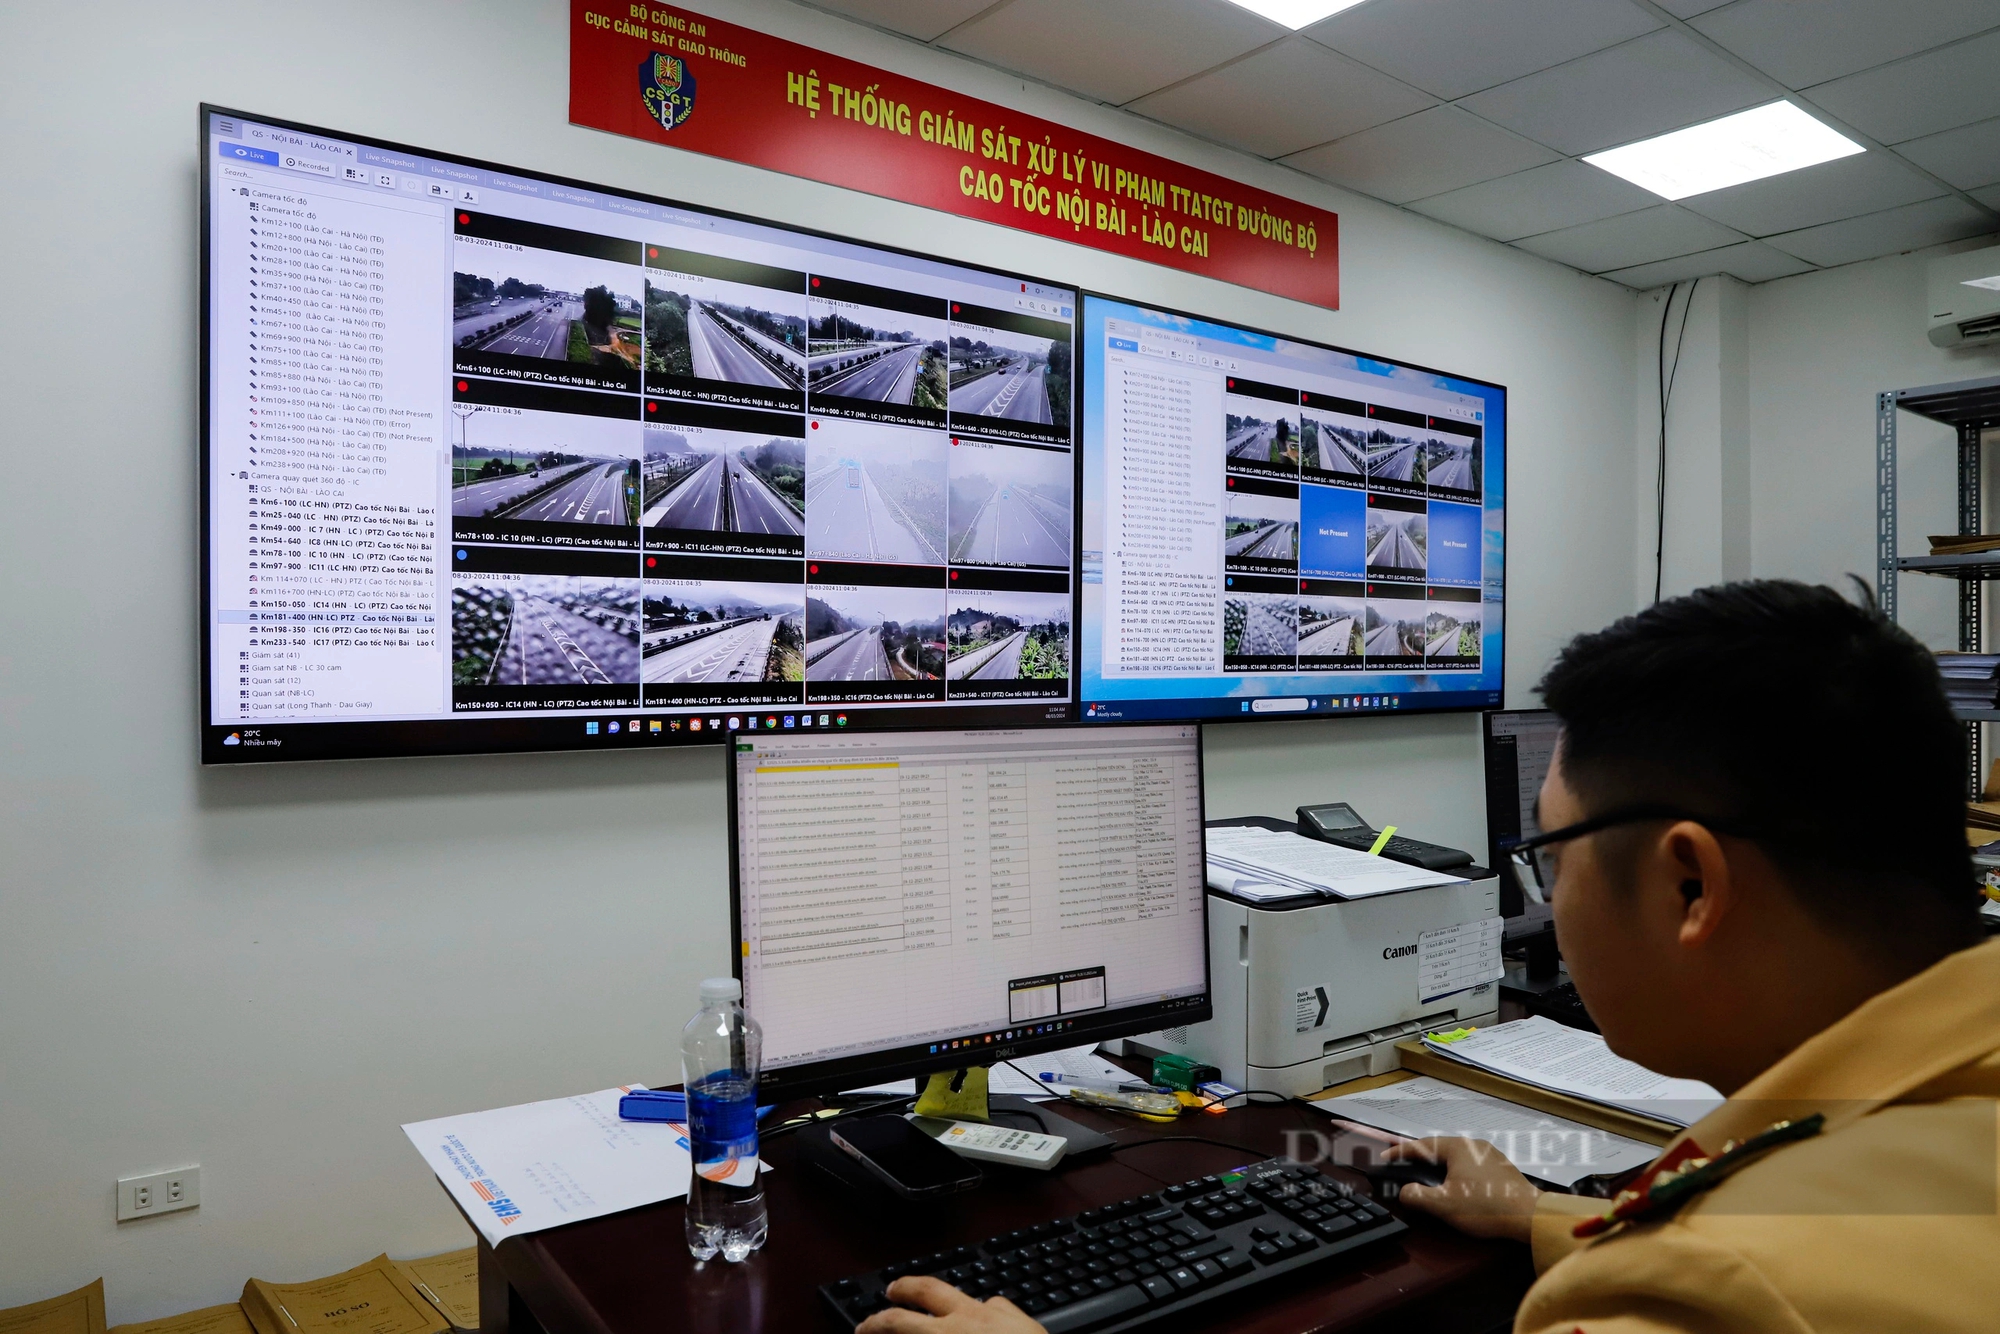 Toàn cảnh "mắt thần" giám sát xử phạt hàng nghìn trường hợp vi phạm trên cao tốc Nội Bài - Lào Cai- Ảnh 6.